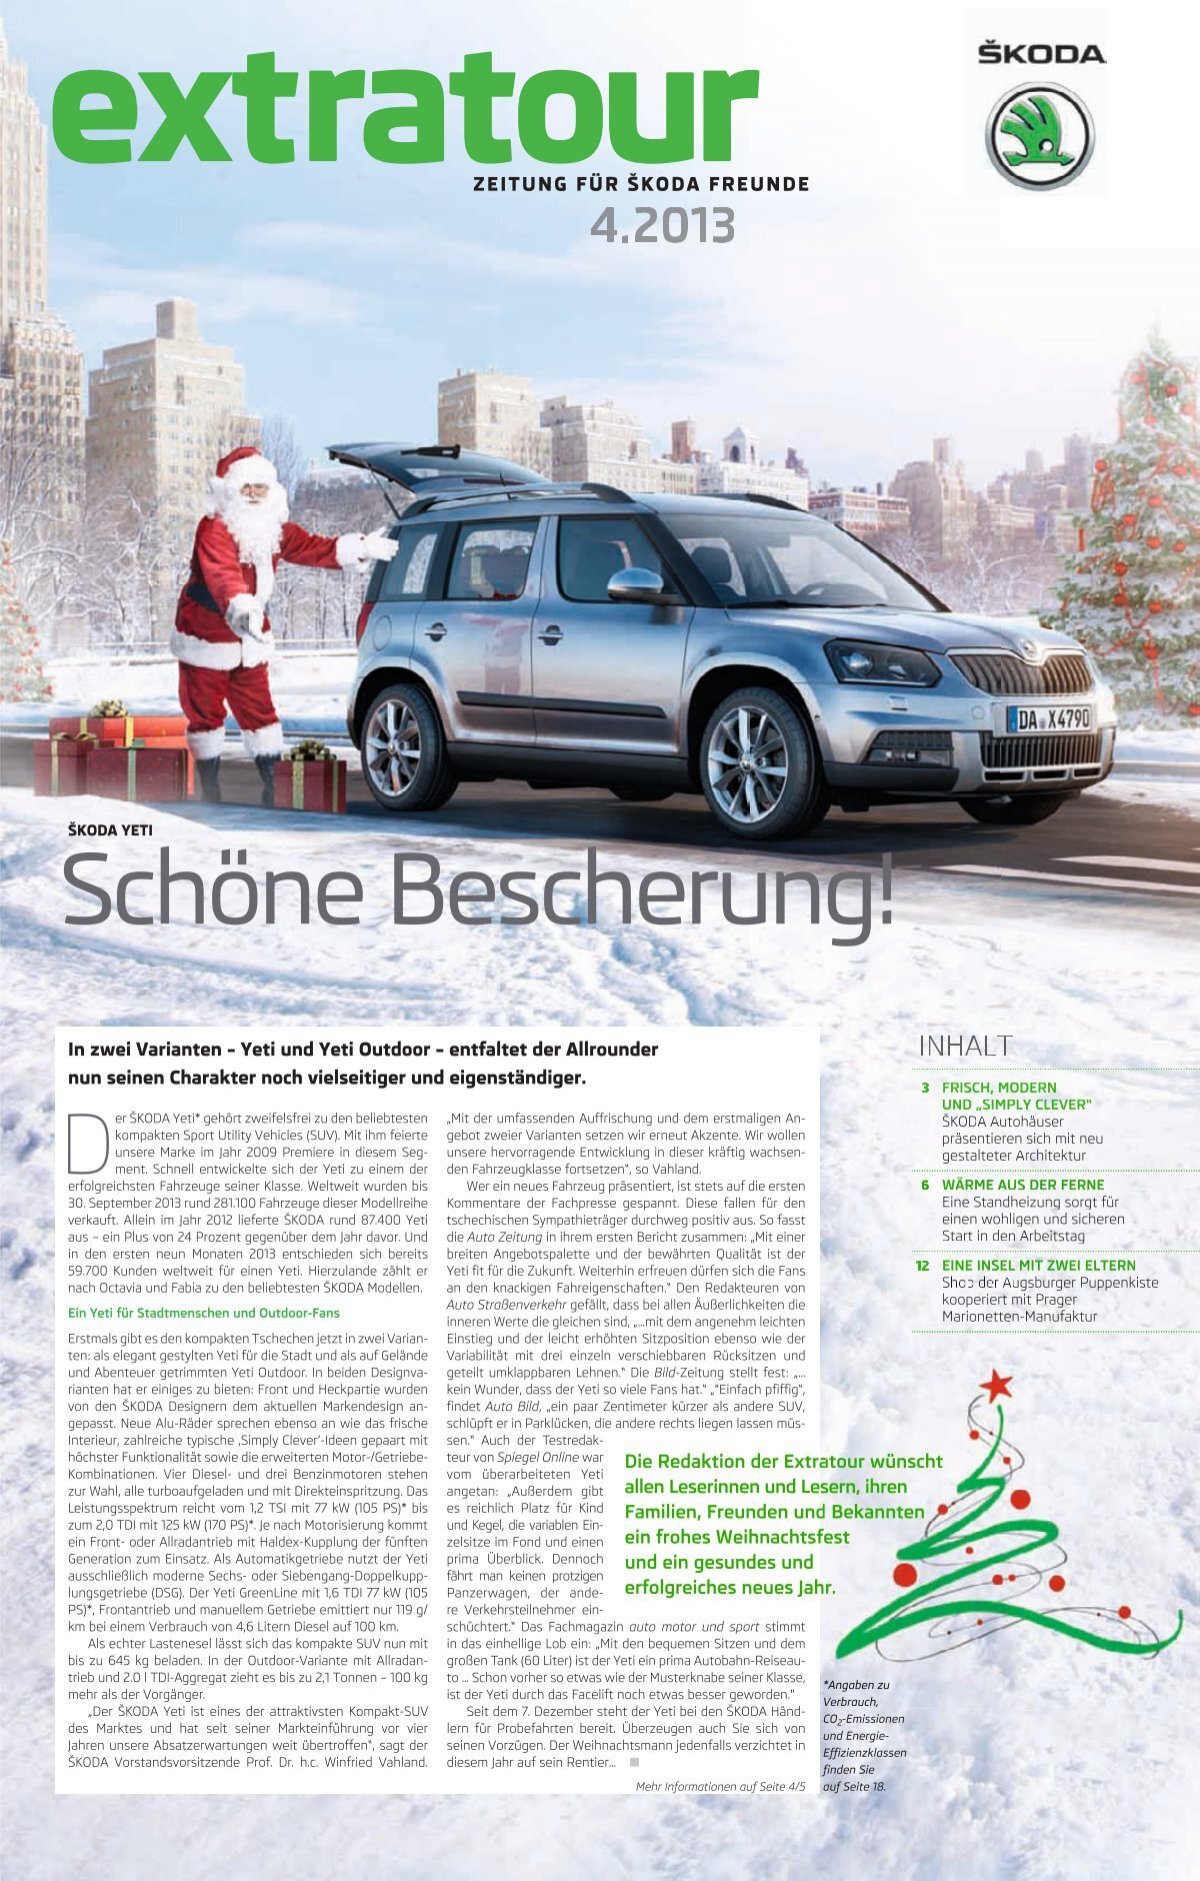 Skoda jubelt: VW-Tochter ist erfolgreichste Importmarke in Deutschland